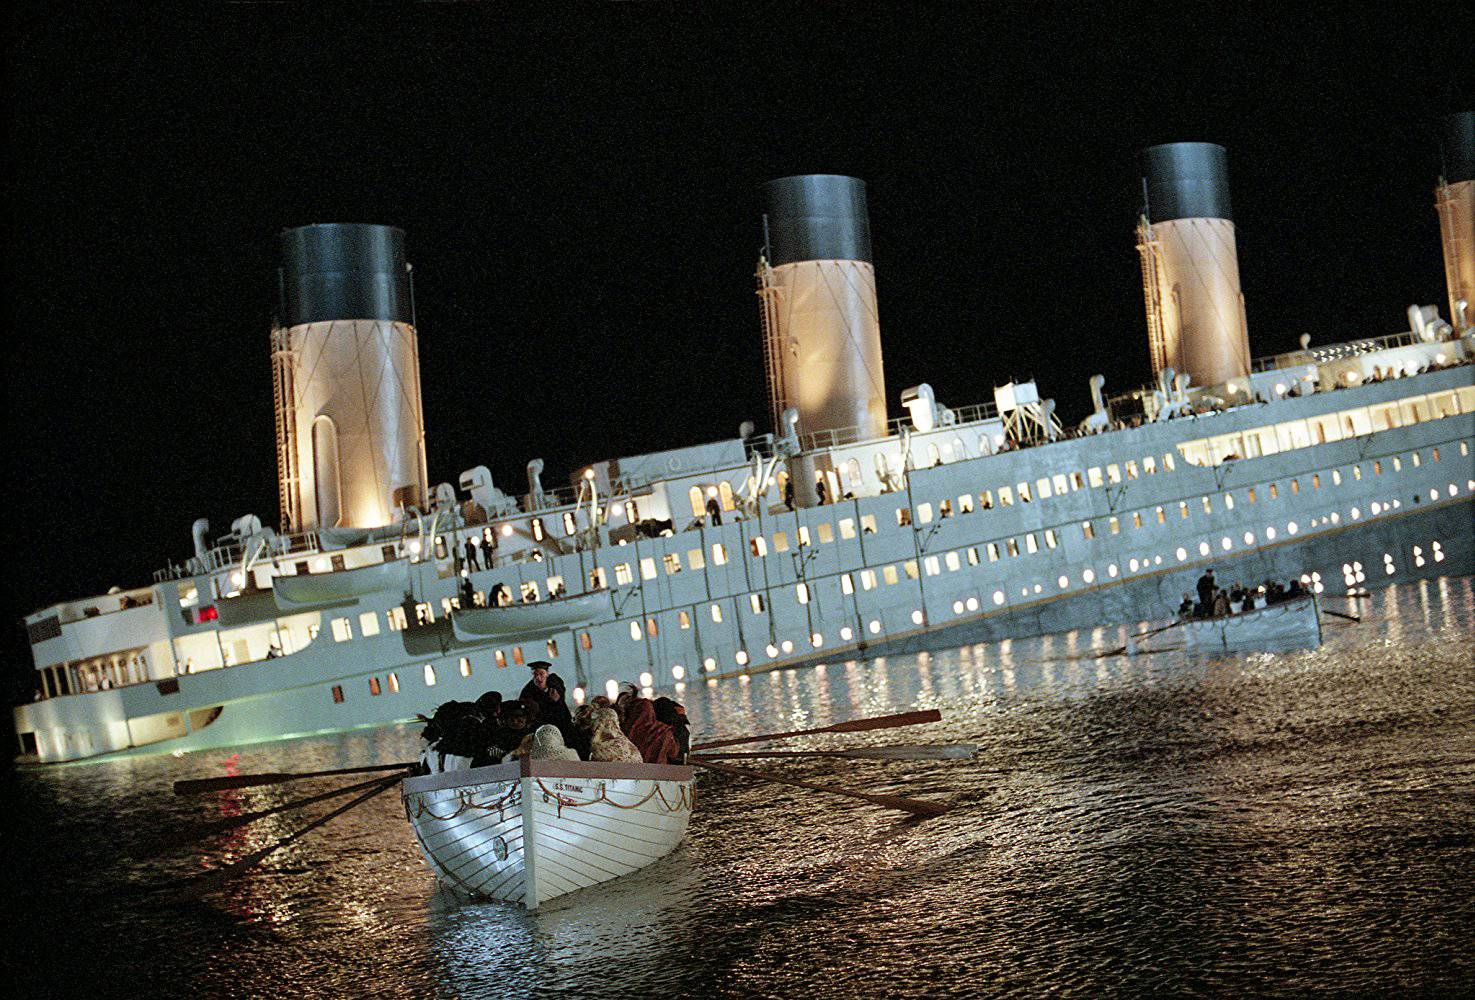 Skoro svi su se utopili: Titanic je na put krenuo s 29 Hrvata...